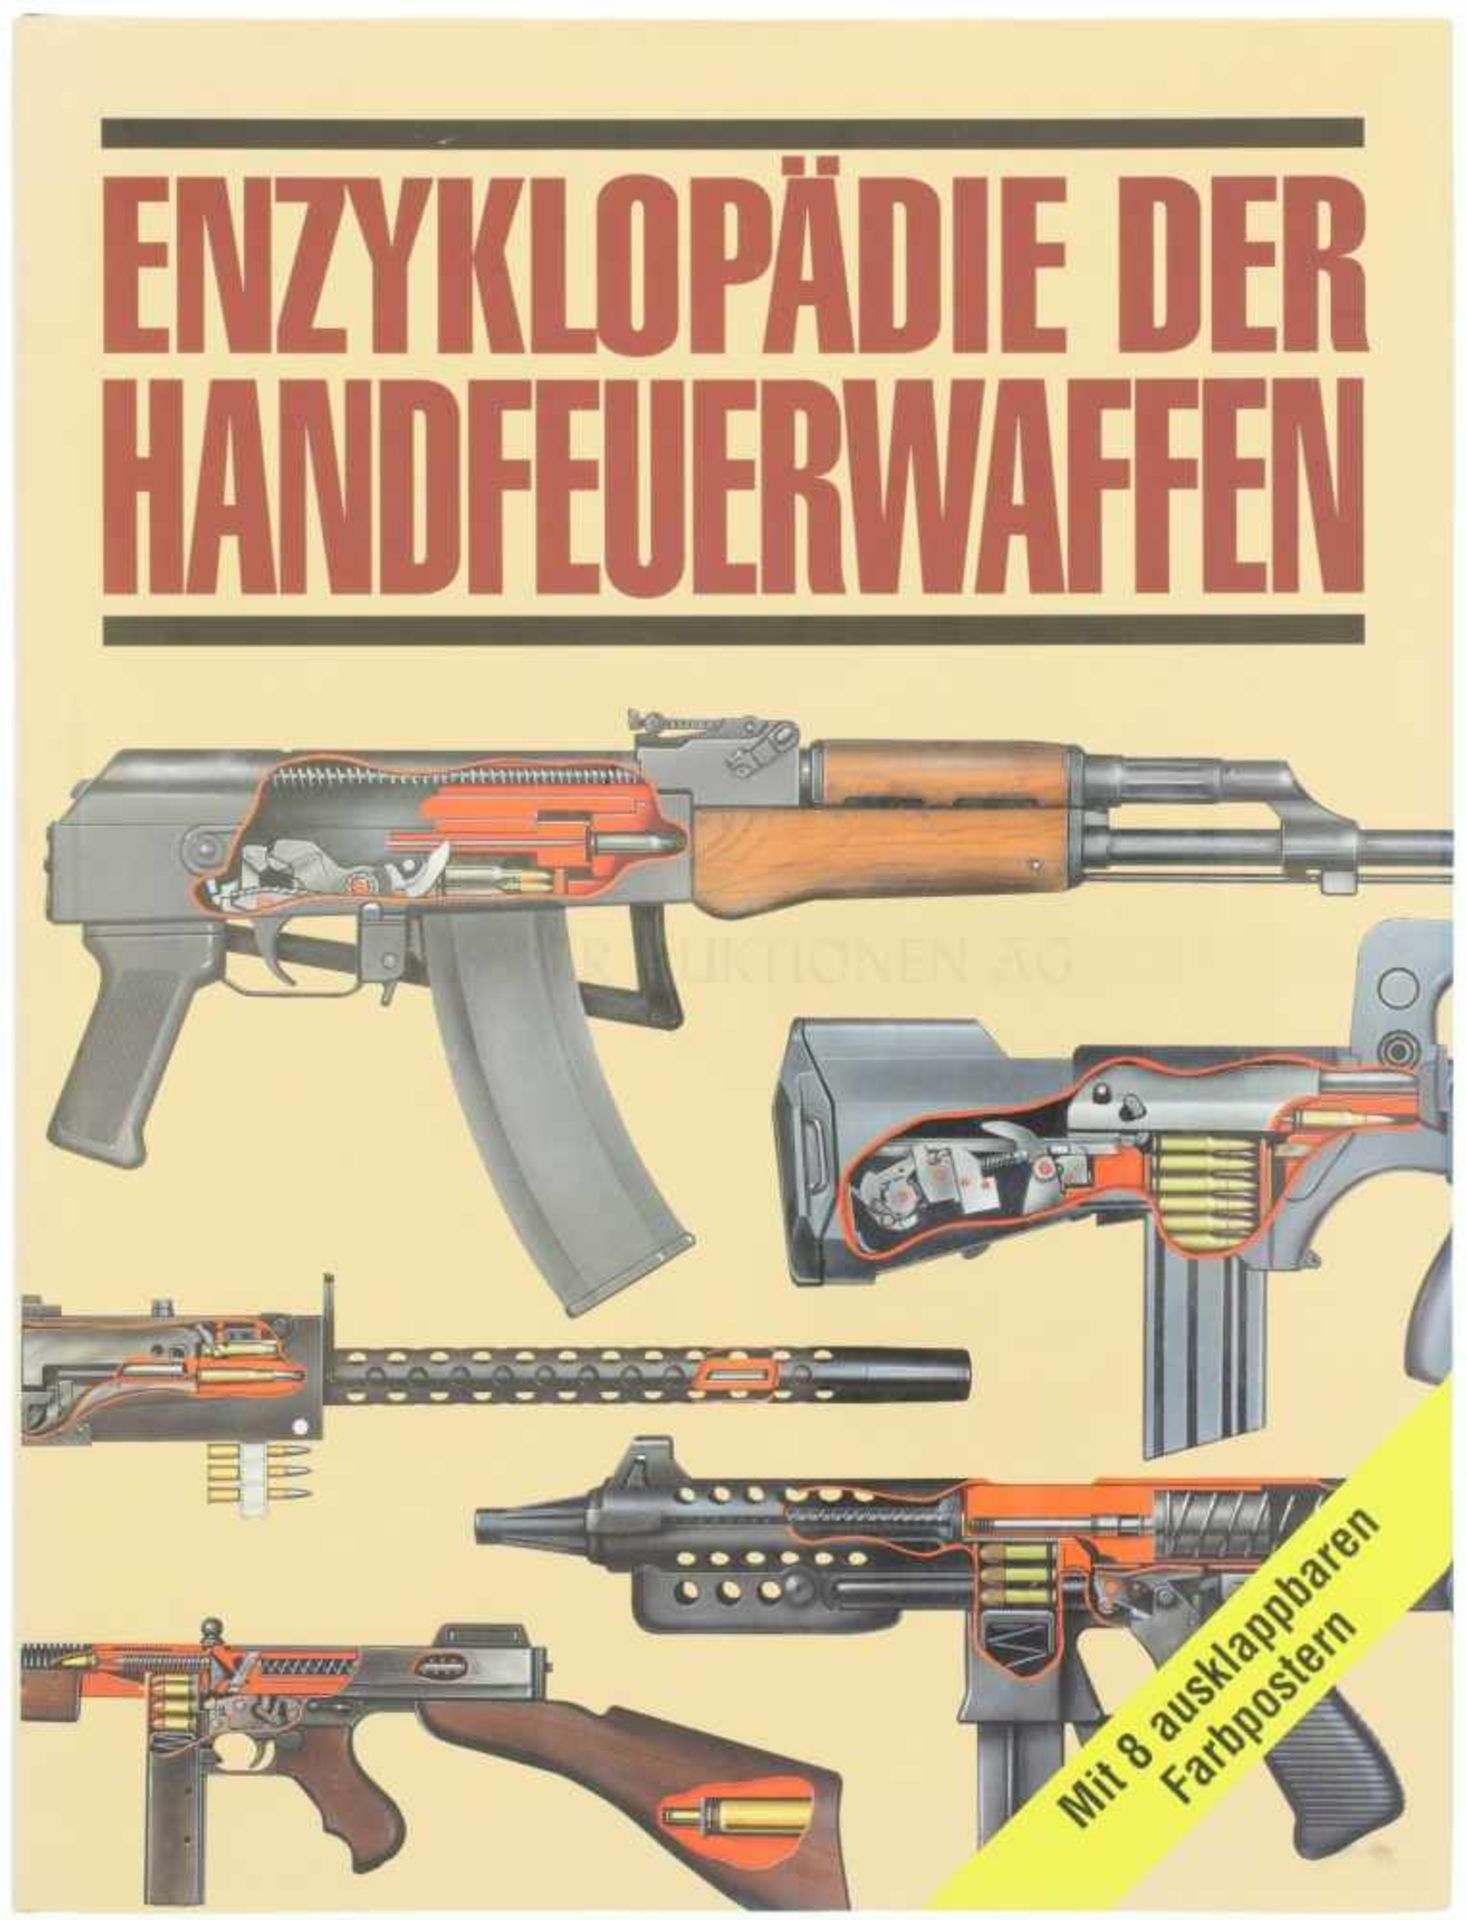 Enzyklopädie der Handfeuerwaffen Autor Craig Philip, Karl Müller Verlag, 1995, 176 Seiten mit vielen